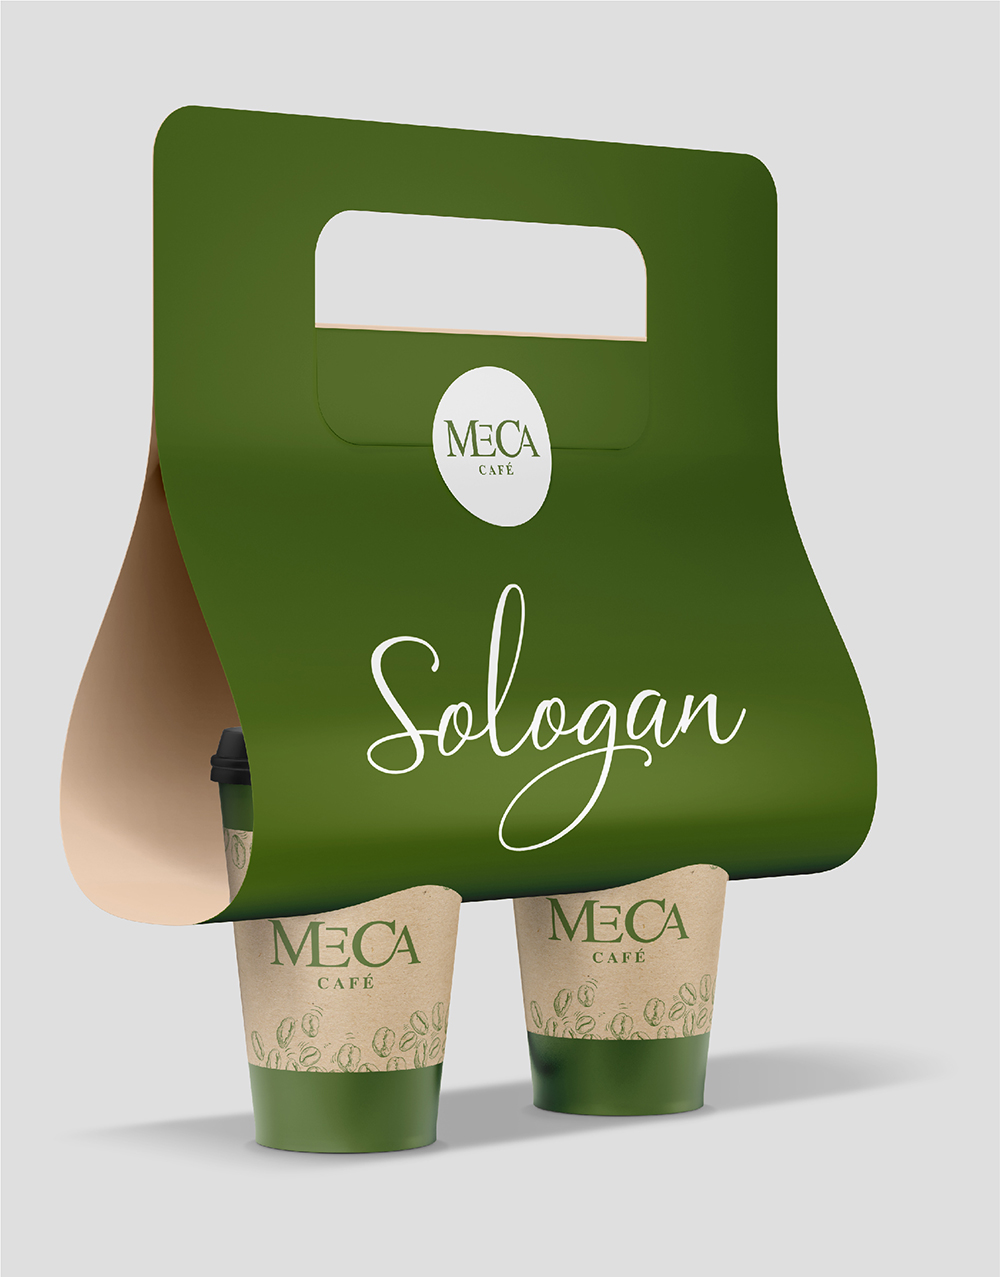 Thiết kế bao bì sản phẩm Meca Café